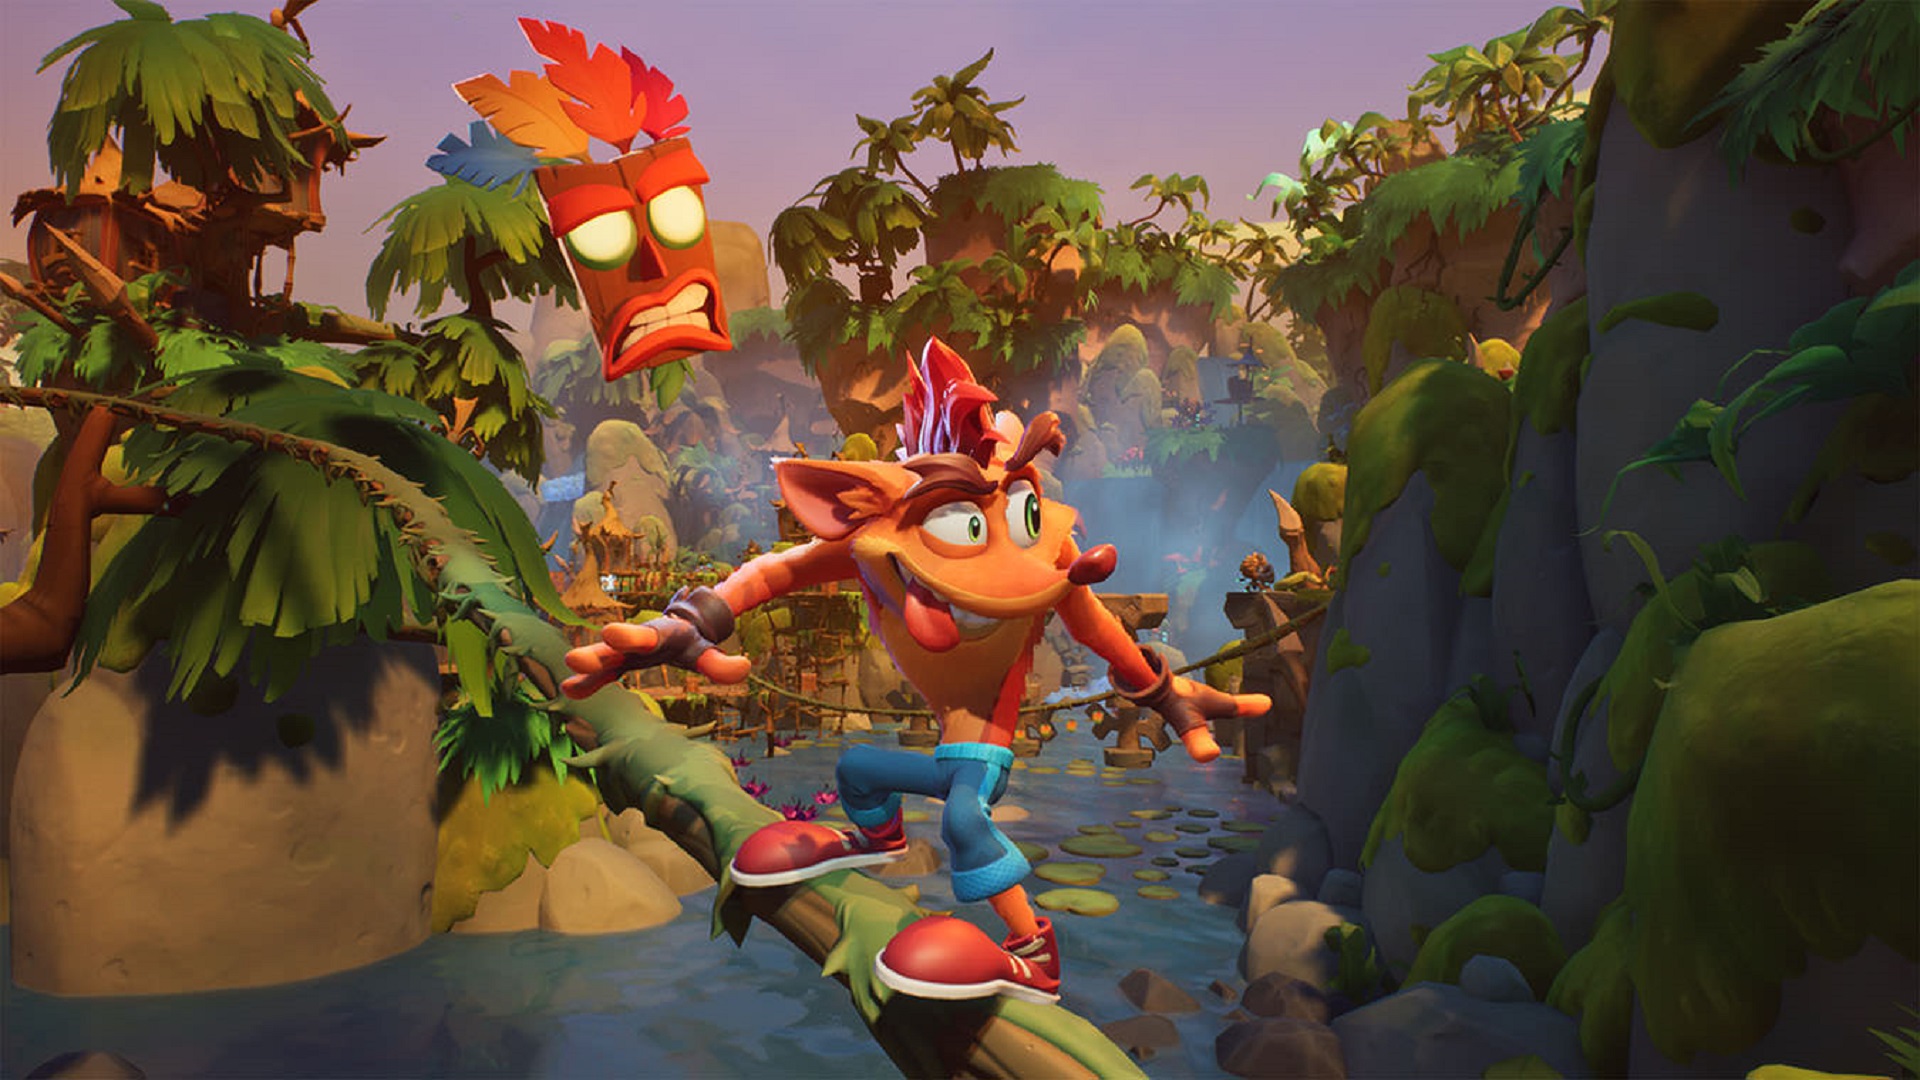 ایکس باکس بازی جدیدی از سازنده بازی Crash Bandicoot منتشر کرد